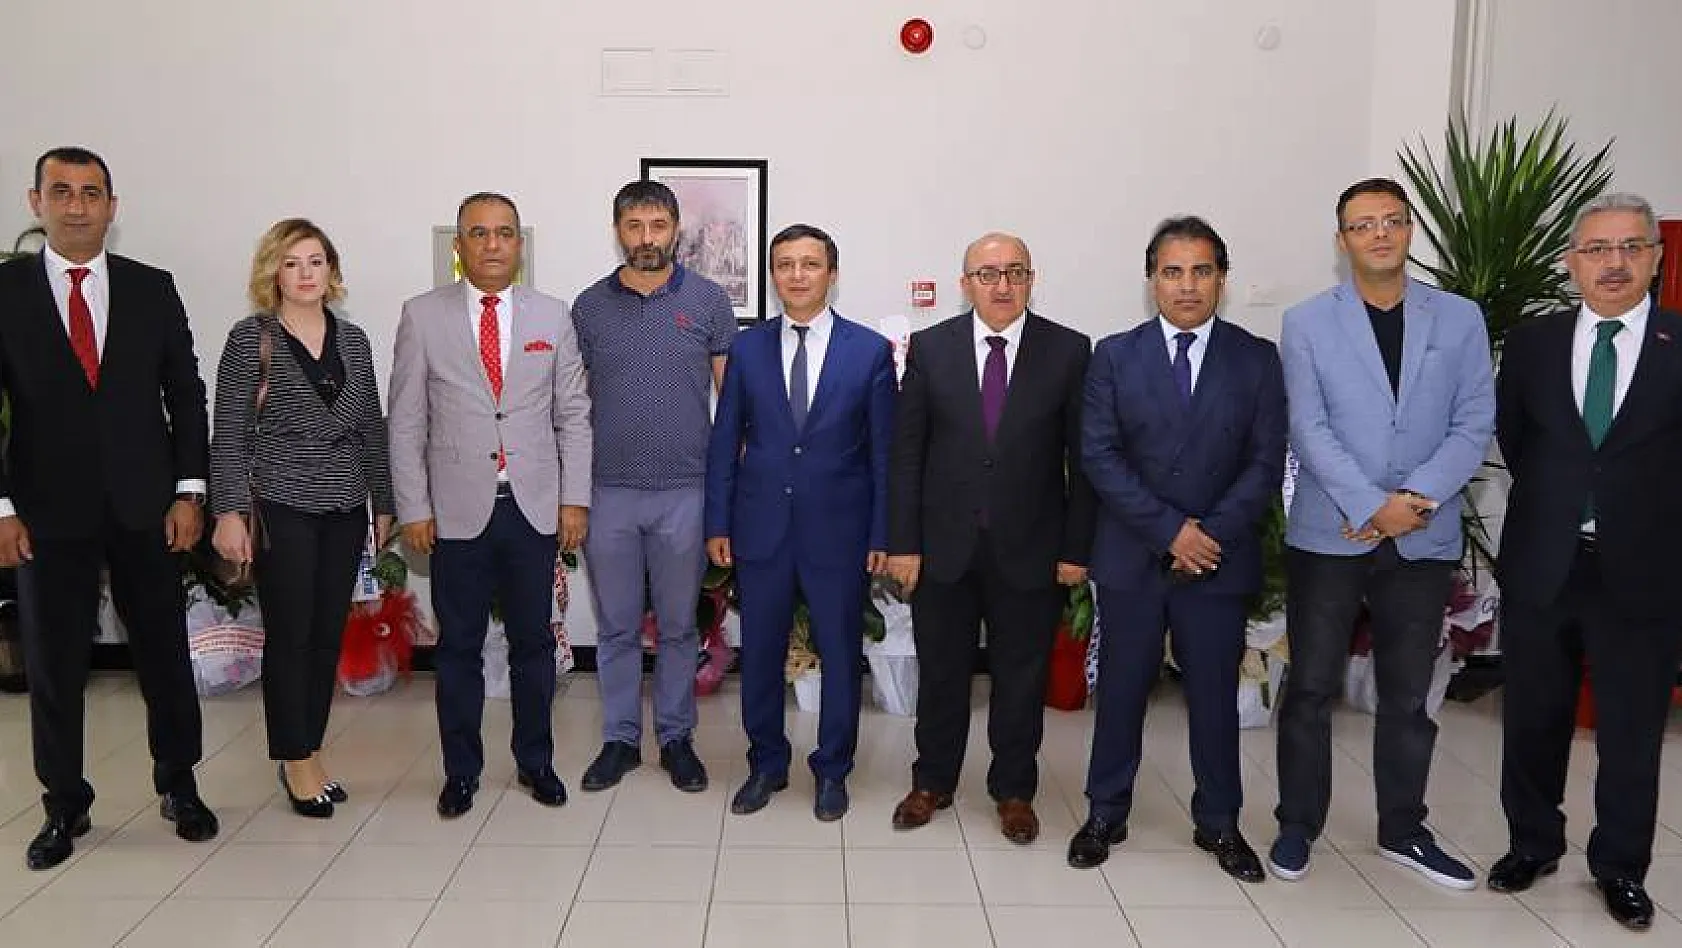 Erciyes Üniversitesi'nin yeni Rektörü Mustafa Çalış:  Cemaat durumlarına asla izin vermem